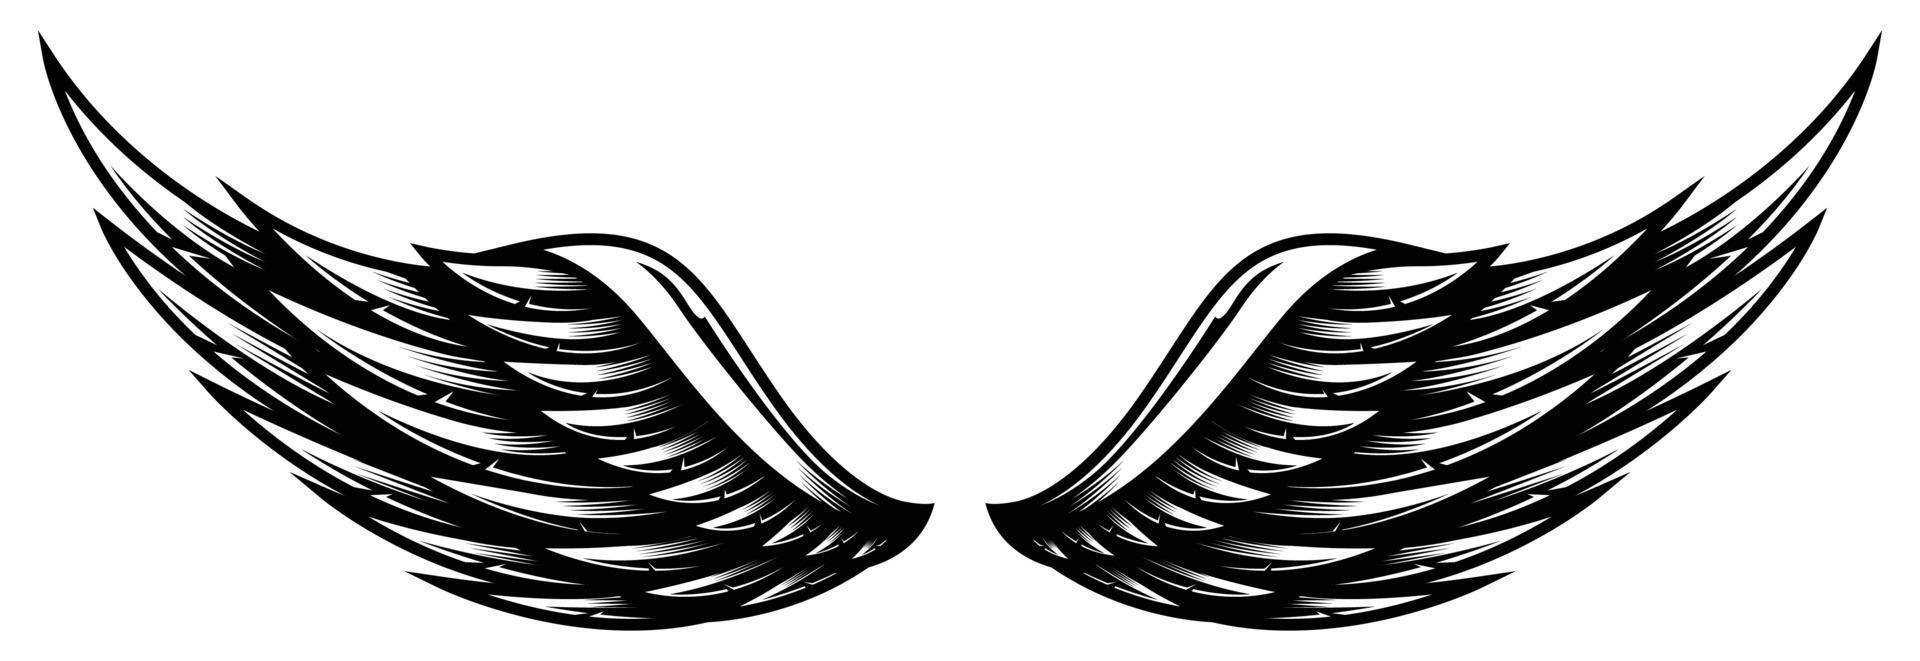 par de alas vector blanco y negro